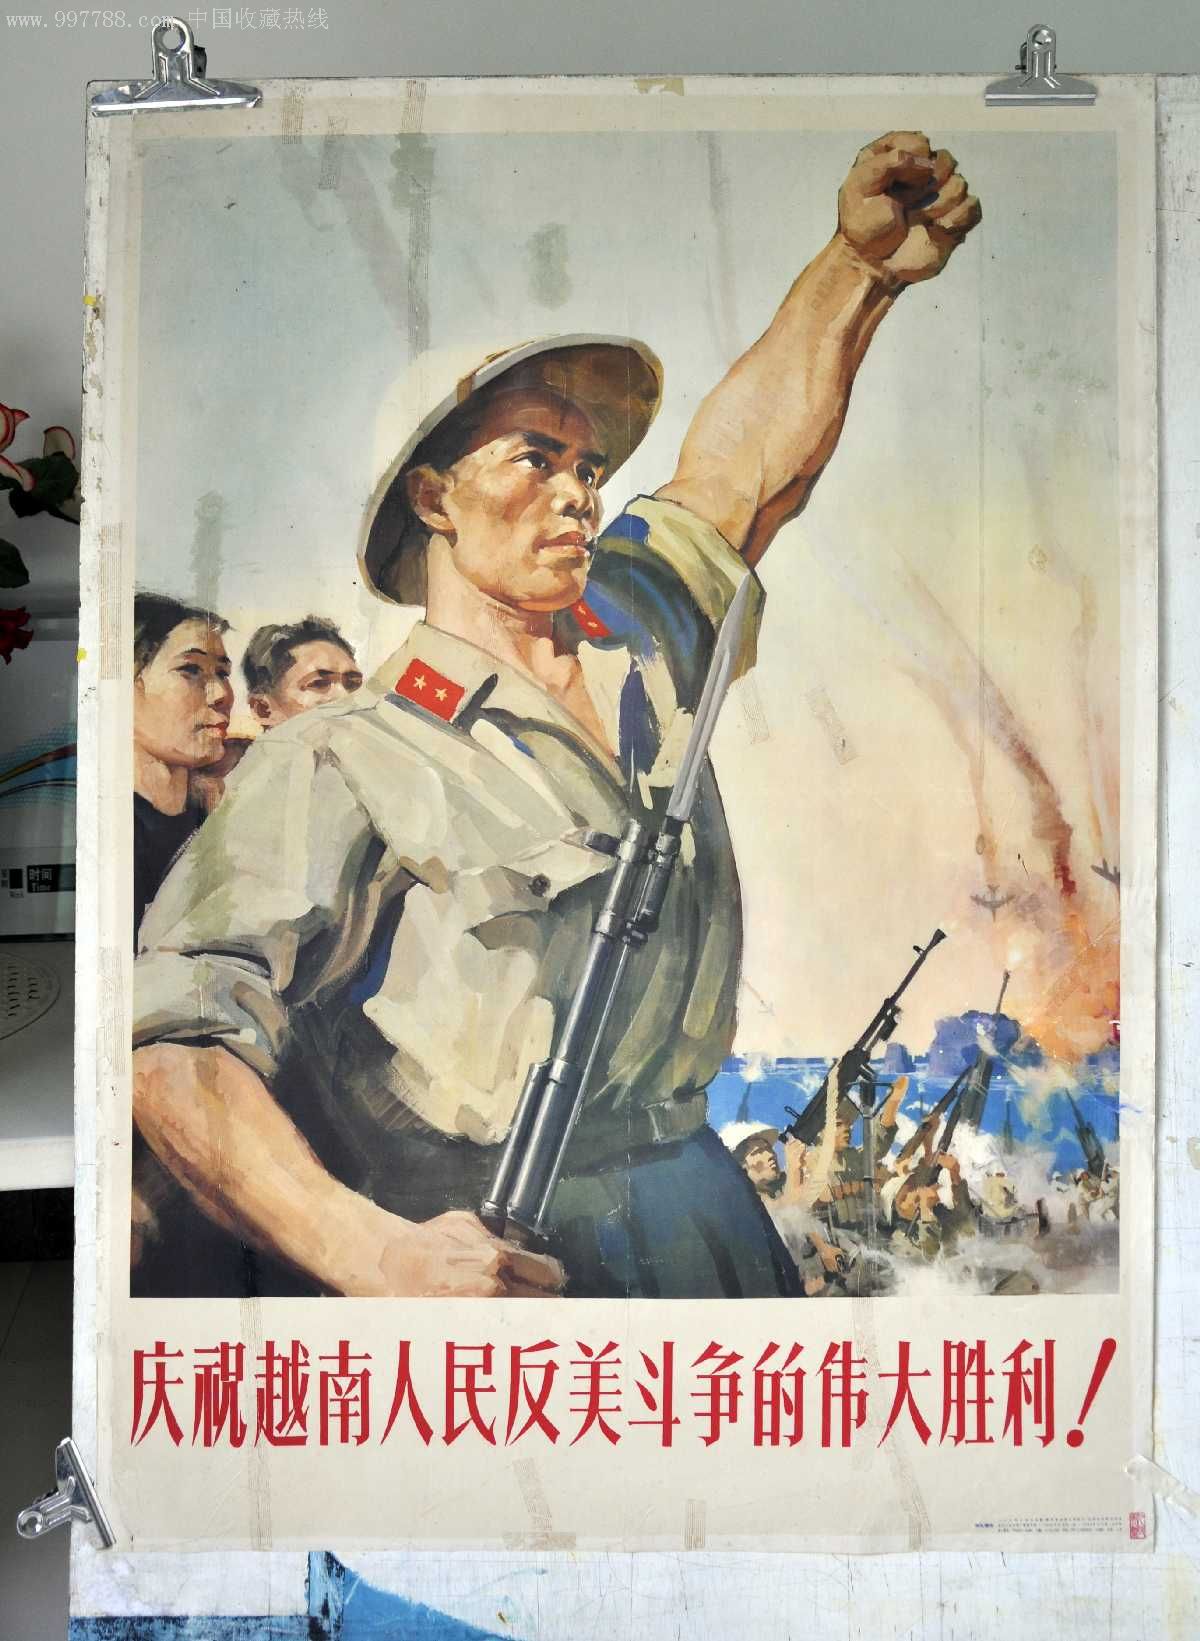 庆祝越南人民反美斗争的伟大胜利!